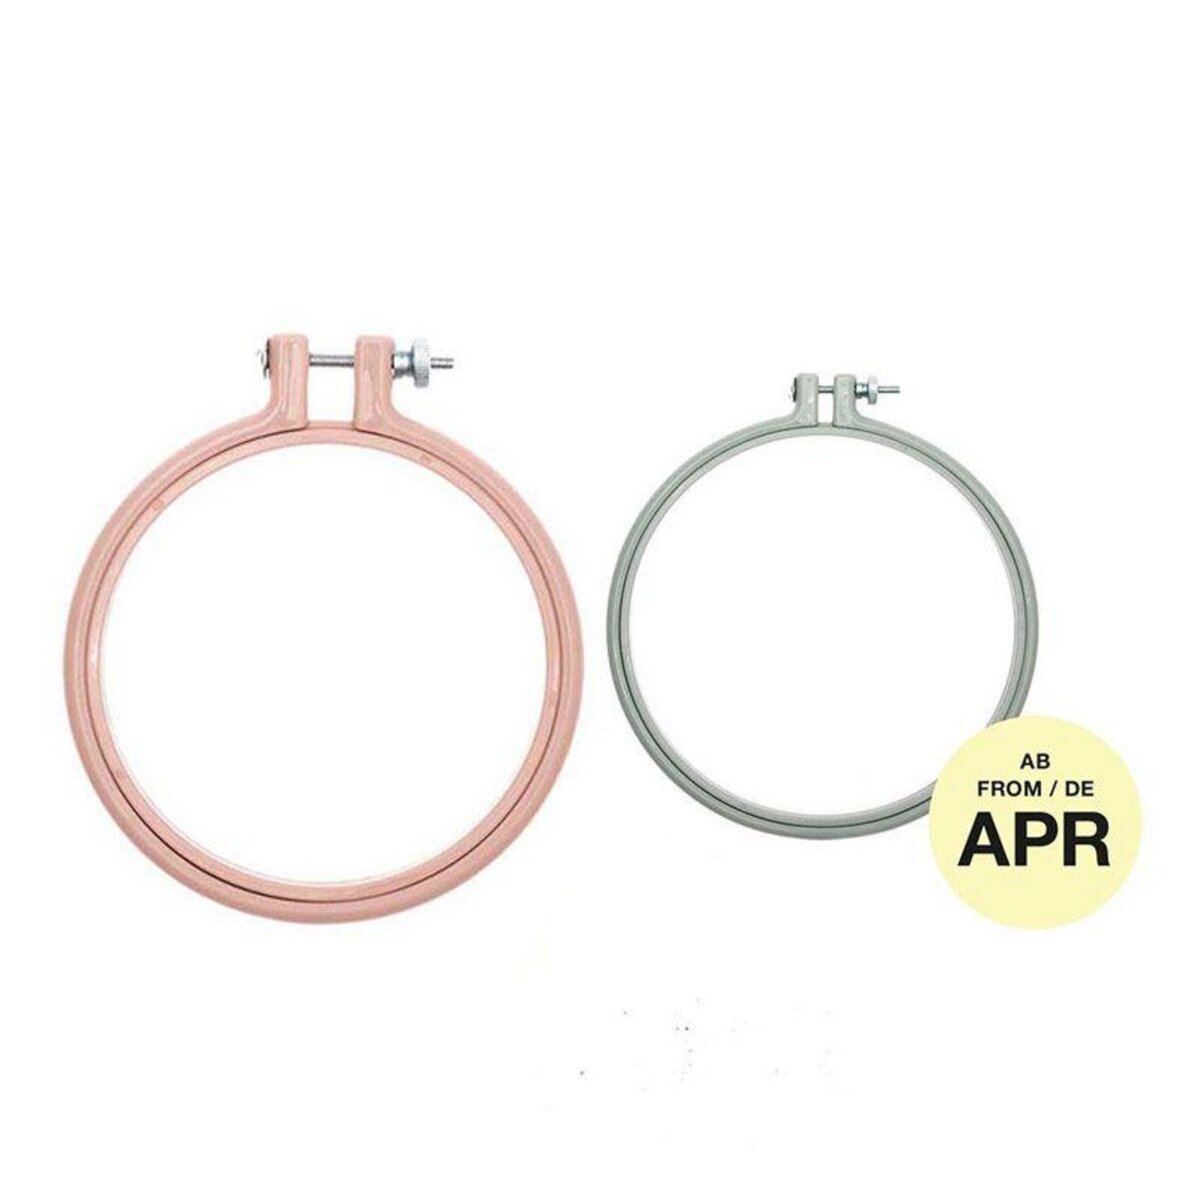 RICO DESIGN 2 anneaux de broderie - rose 10,1 cm + menthe 15,2 cm